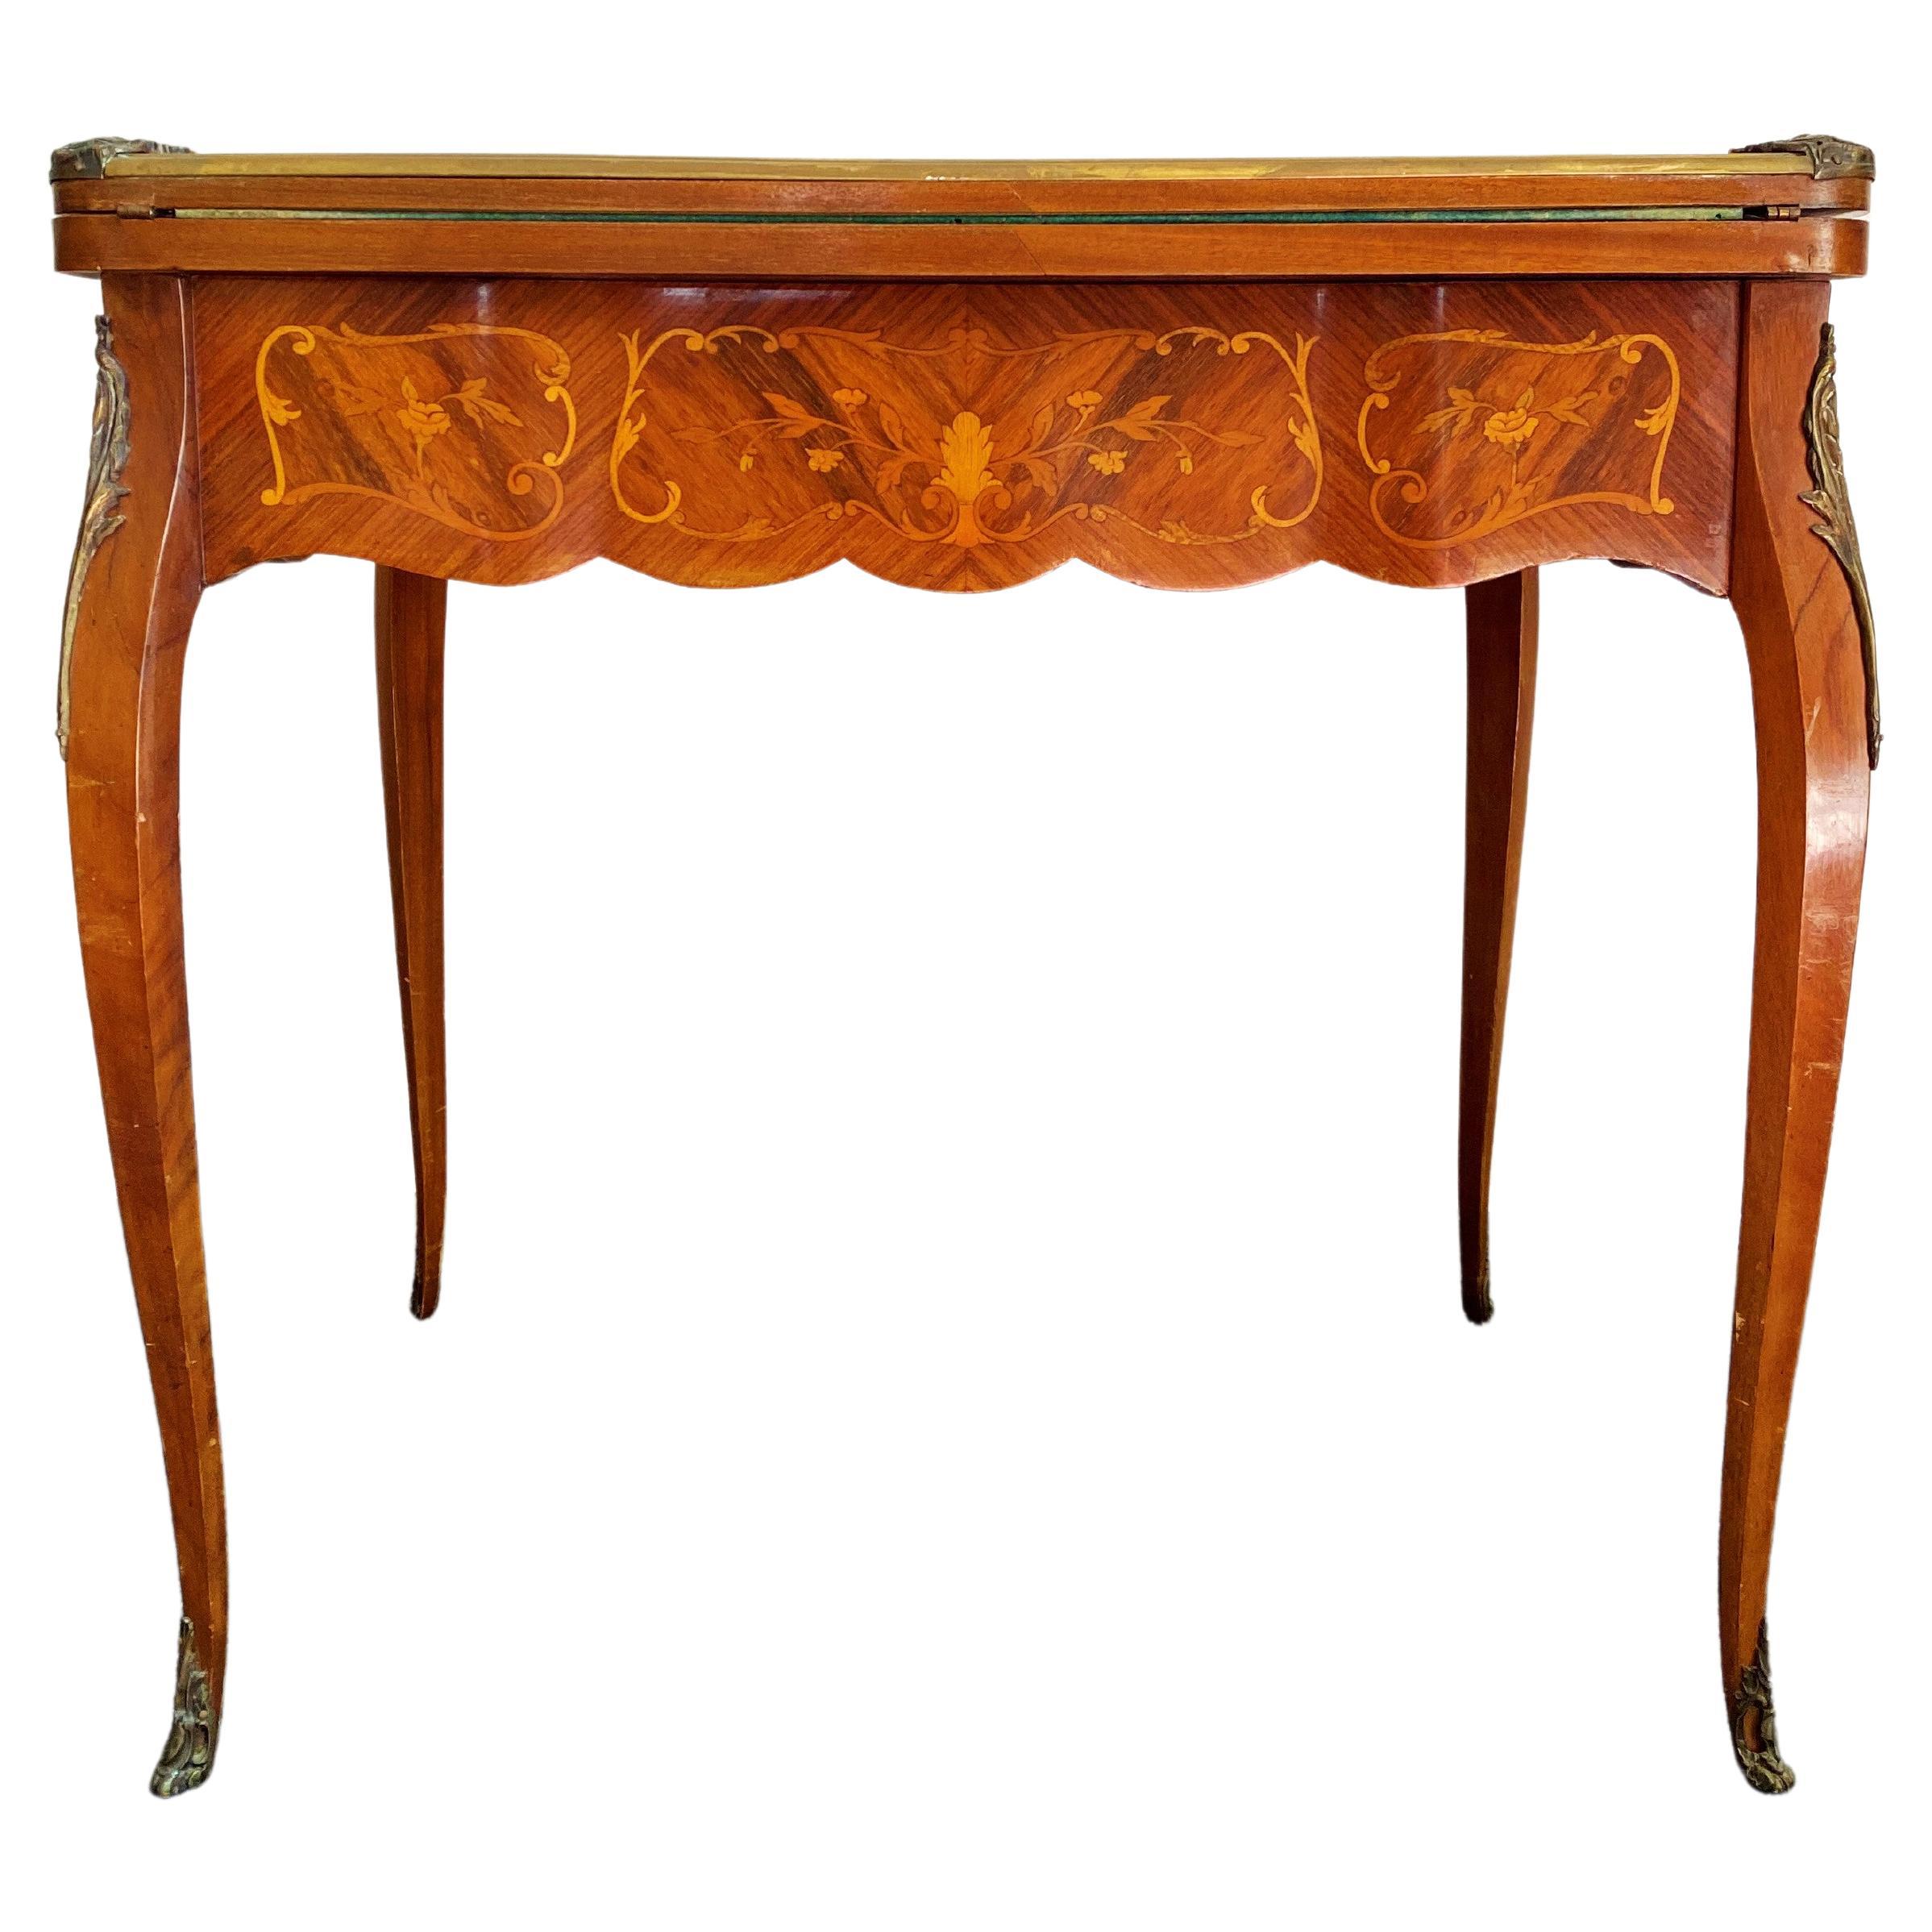 Französischer Spieltisch aus der Zeit Napoleons III. – Louis XV.-Stil – 19. Jahrhundert – Frankreich